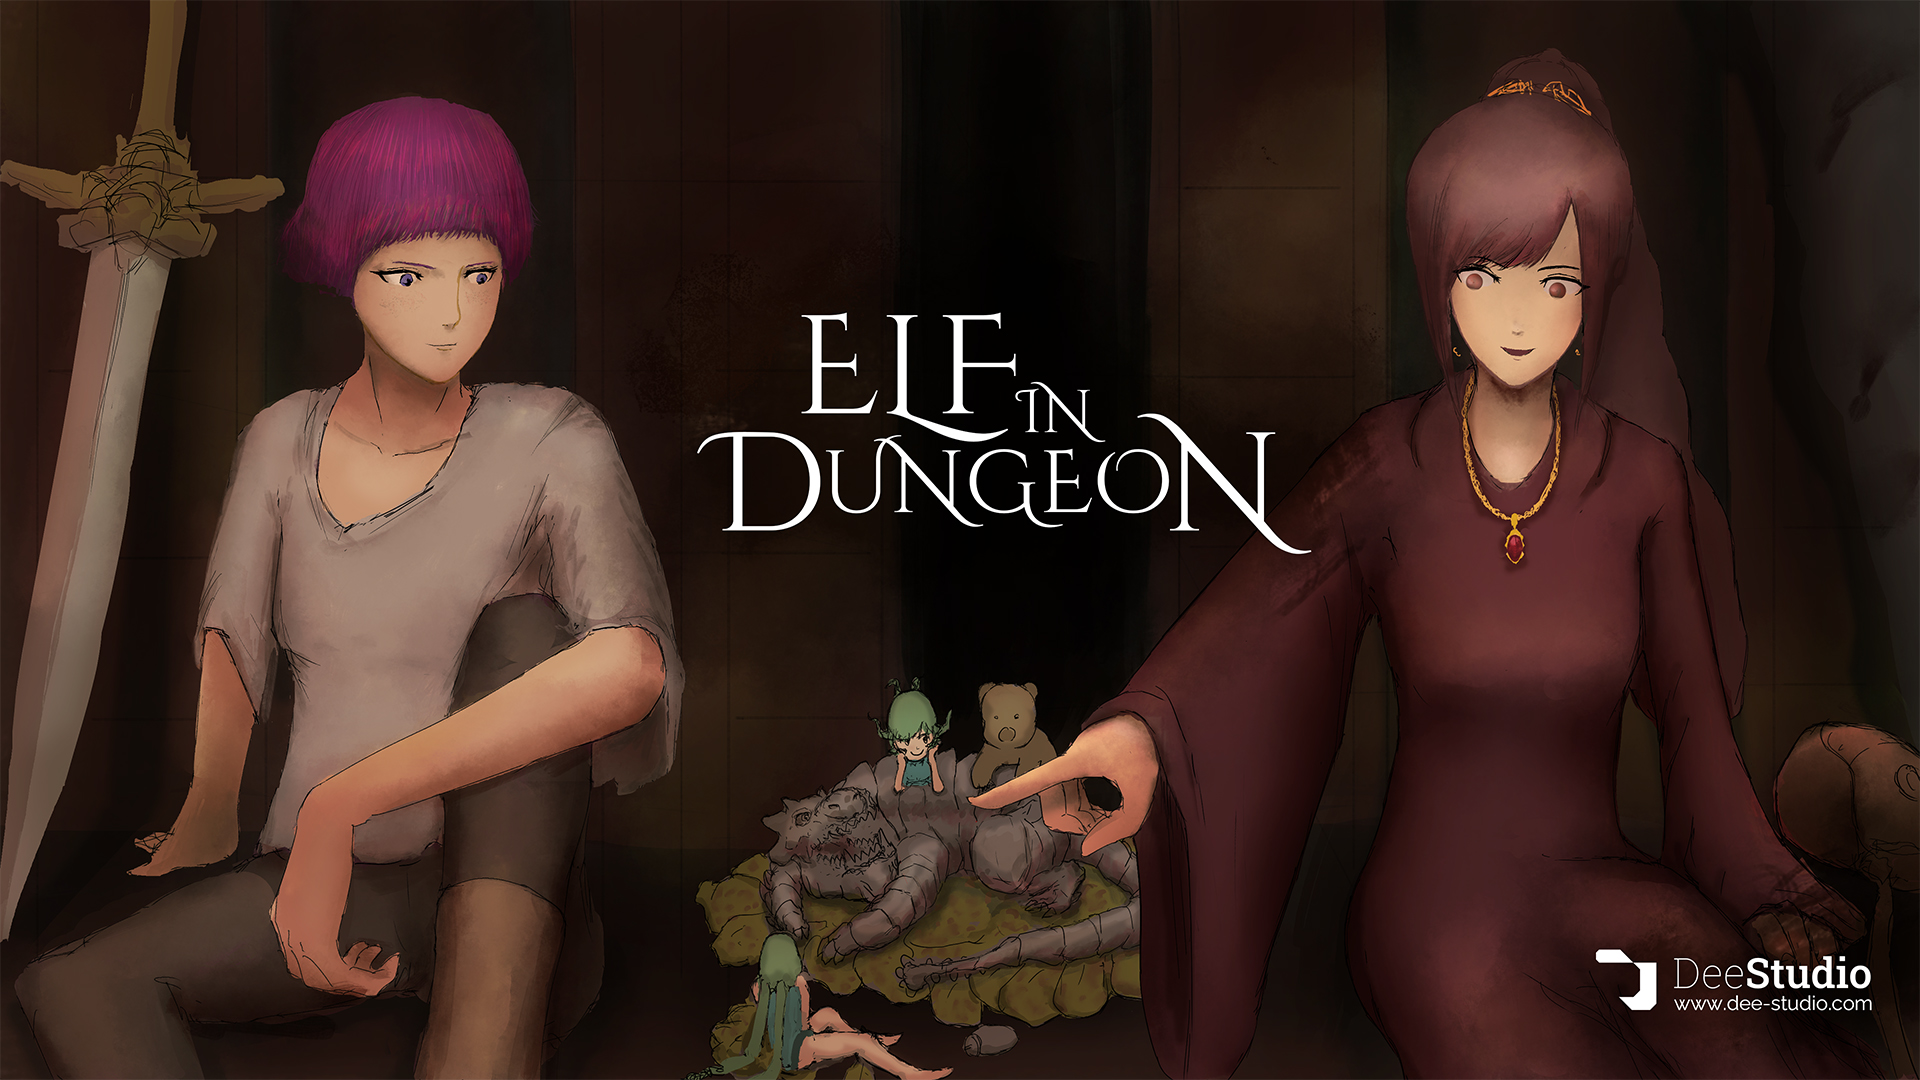 エルフインダンジョン開発日記 / Elf in Dungeon Dev Diary 5